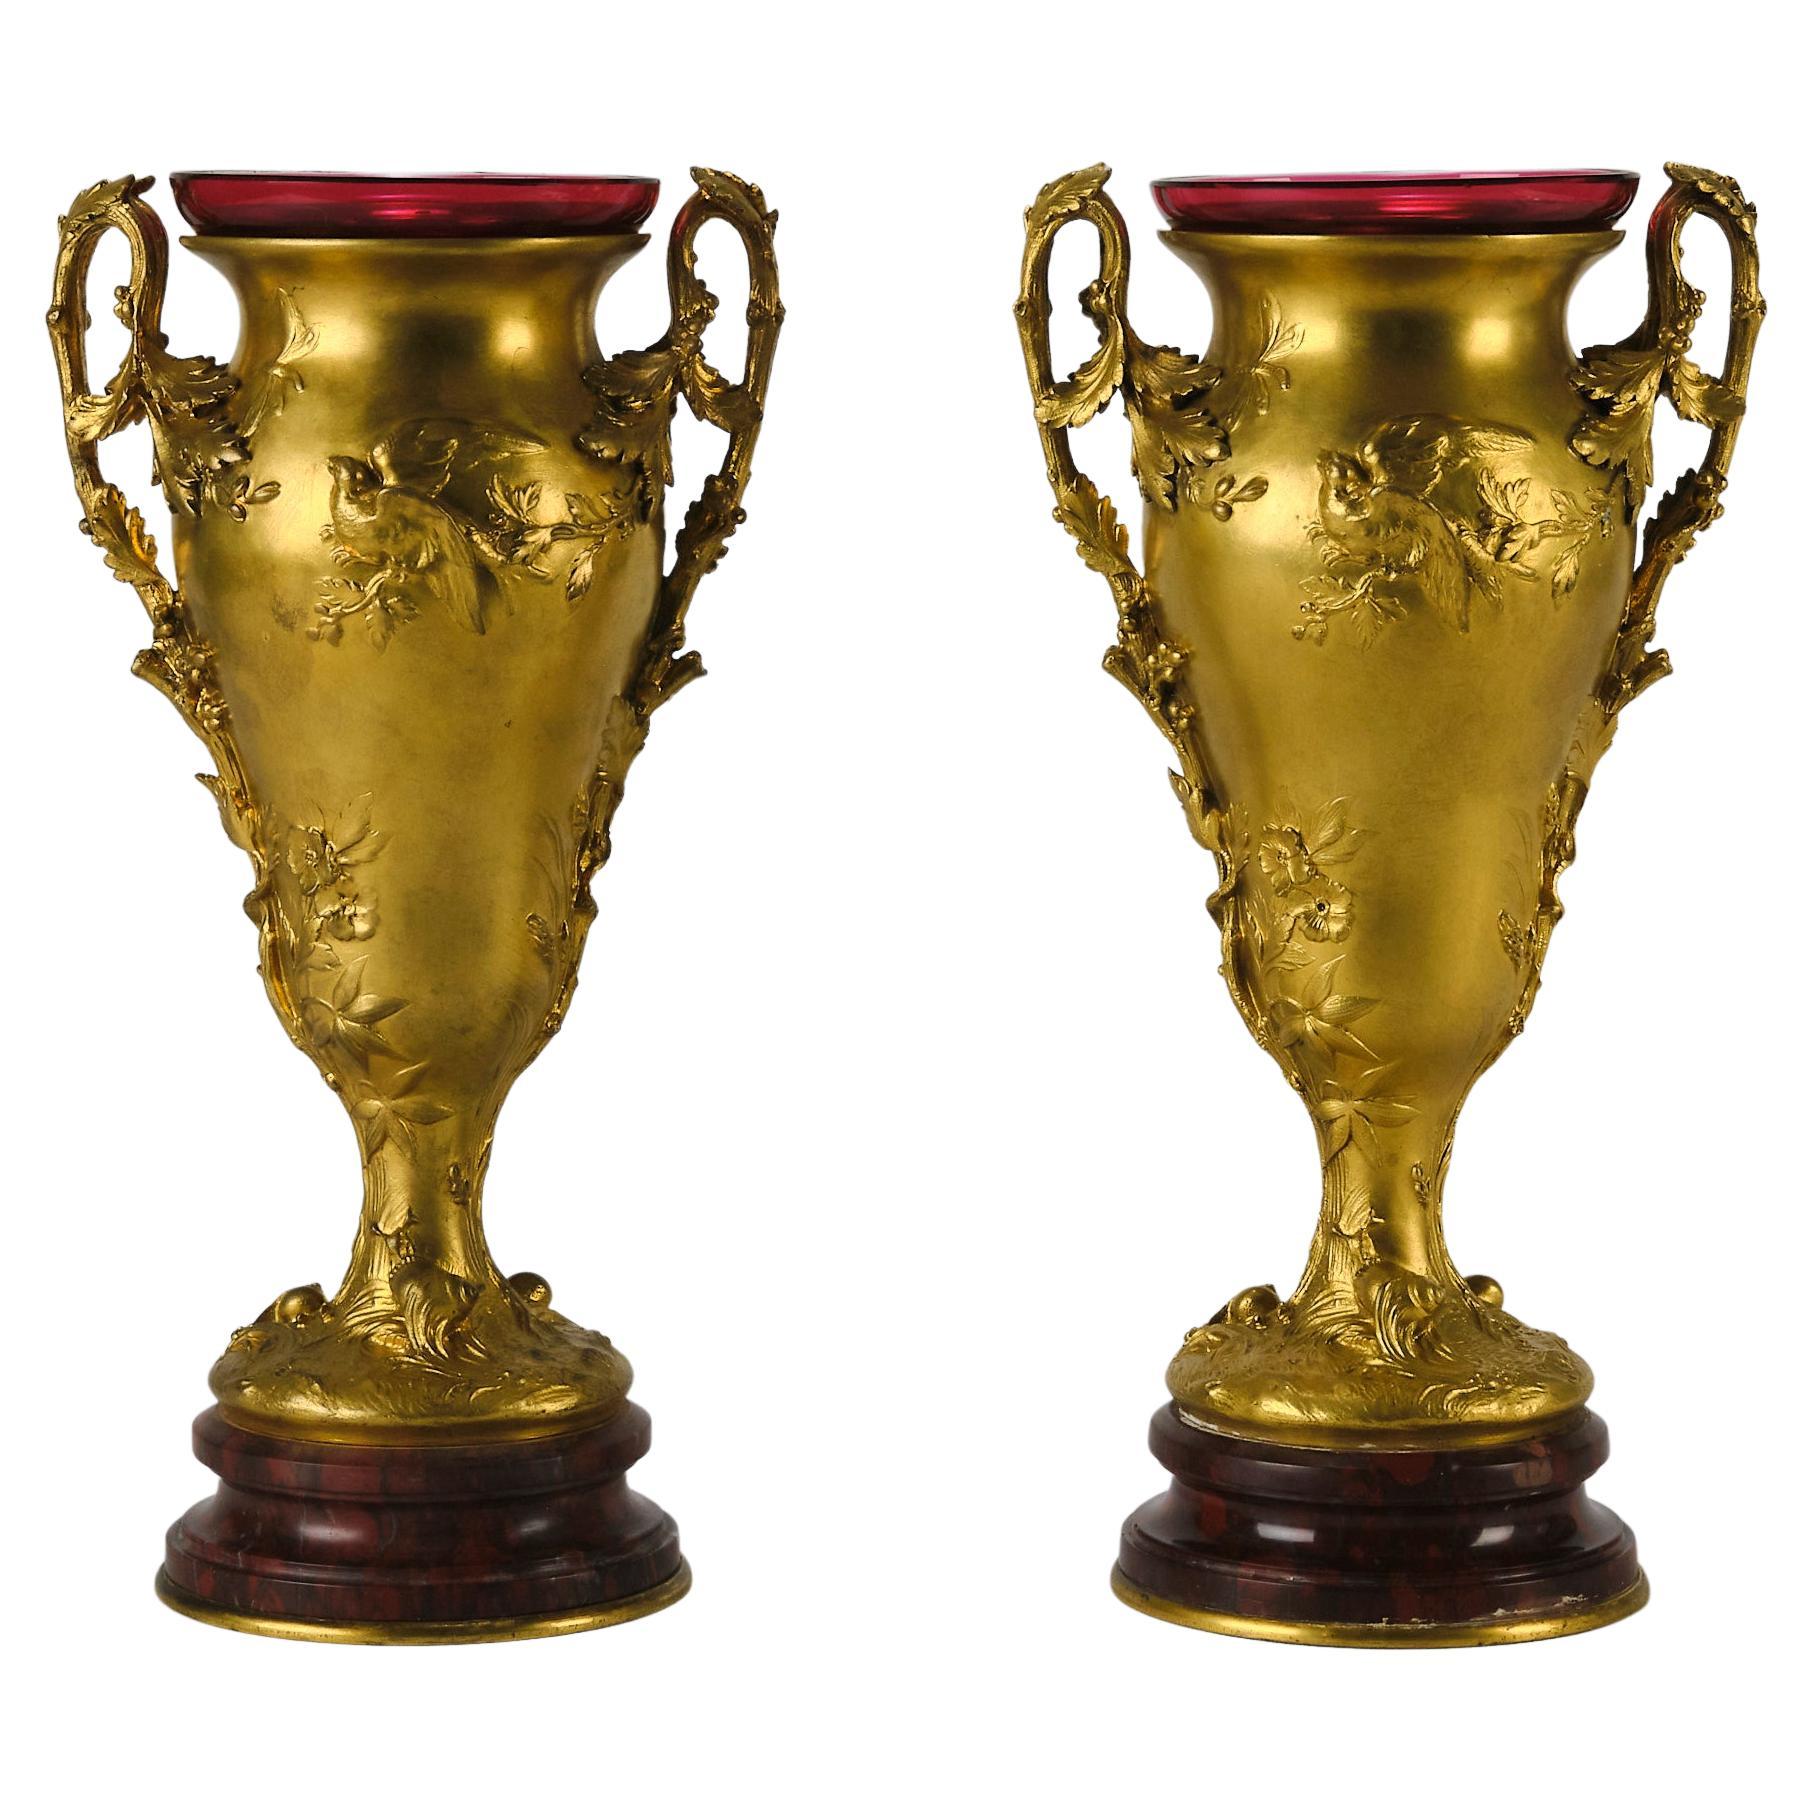 Jarrones decorativos" de bronce dorado de principios del siglo XX, de Ferdinand Barbedienne